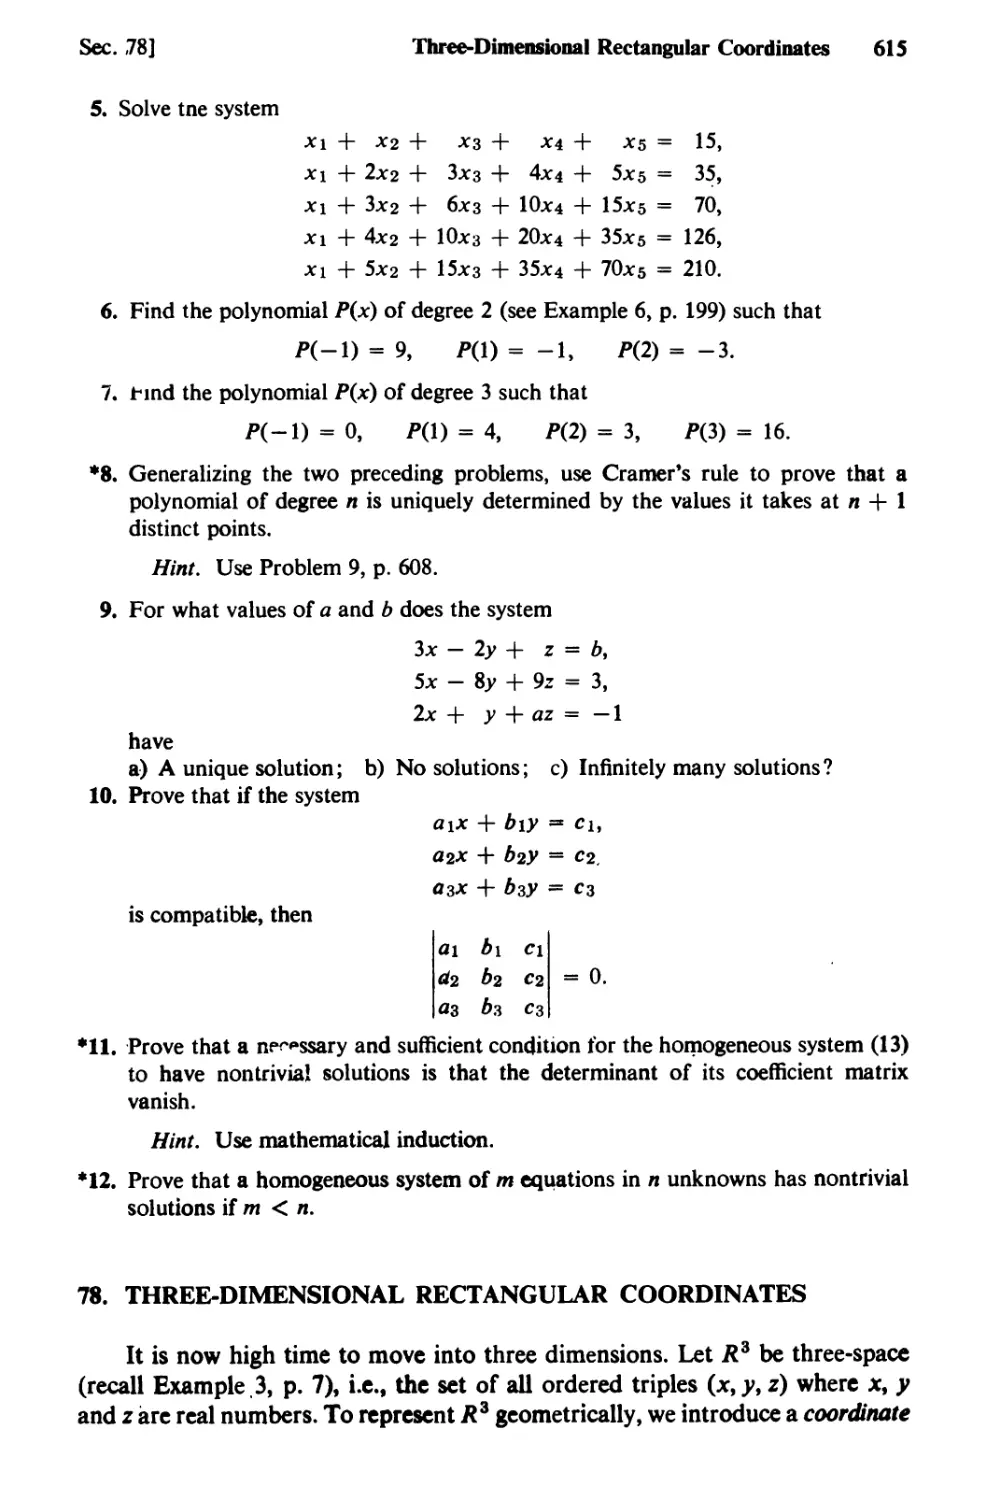 78. Three-Dimensional Rectangular Coordinates